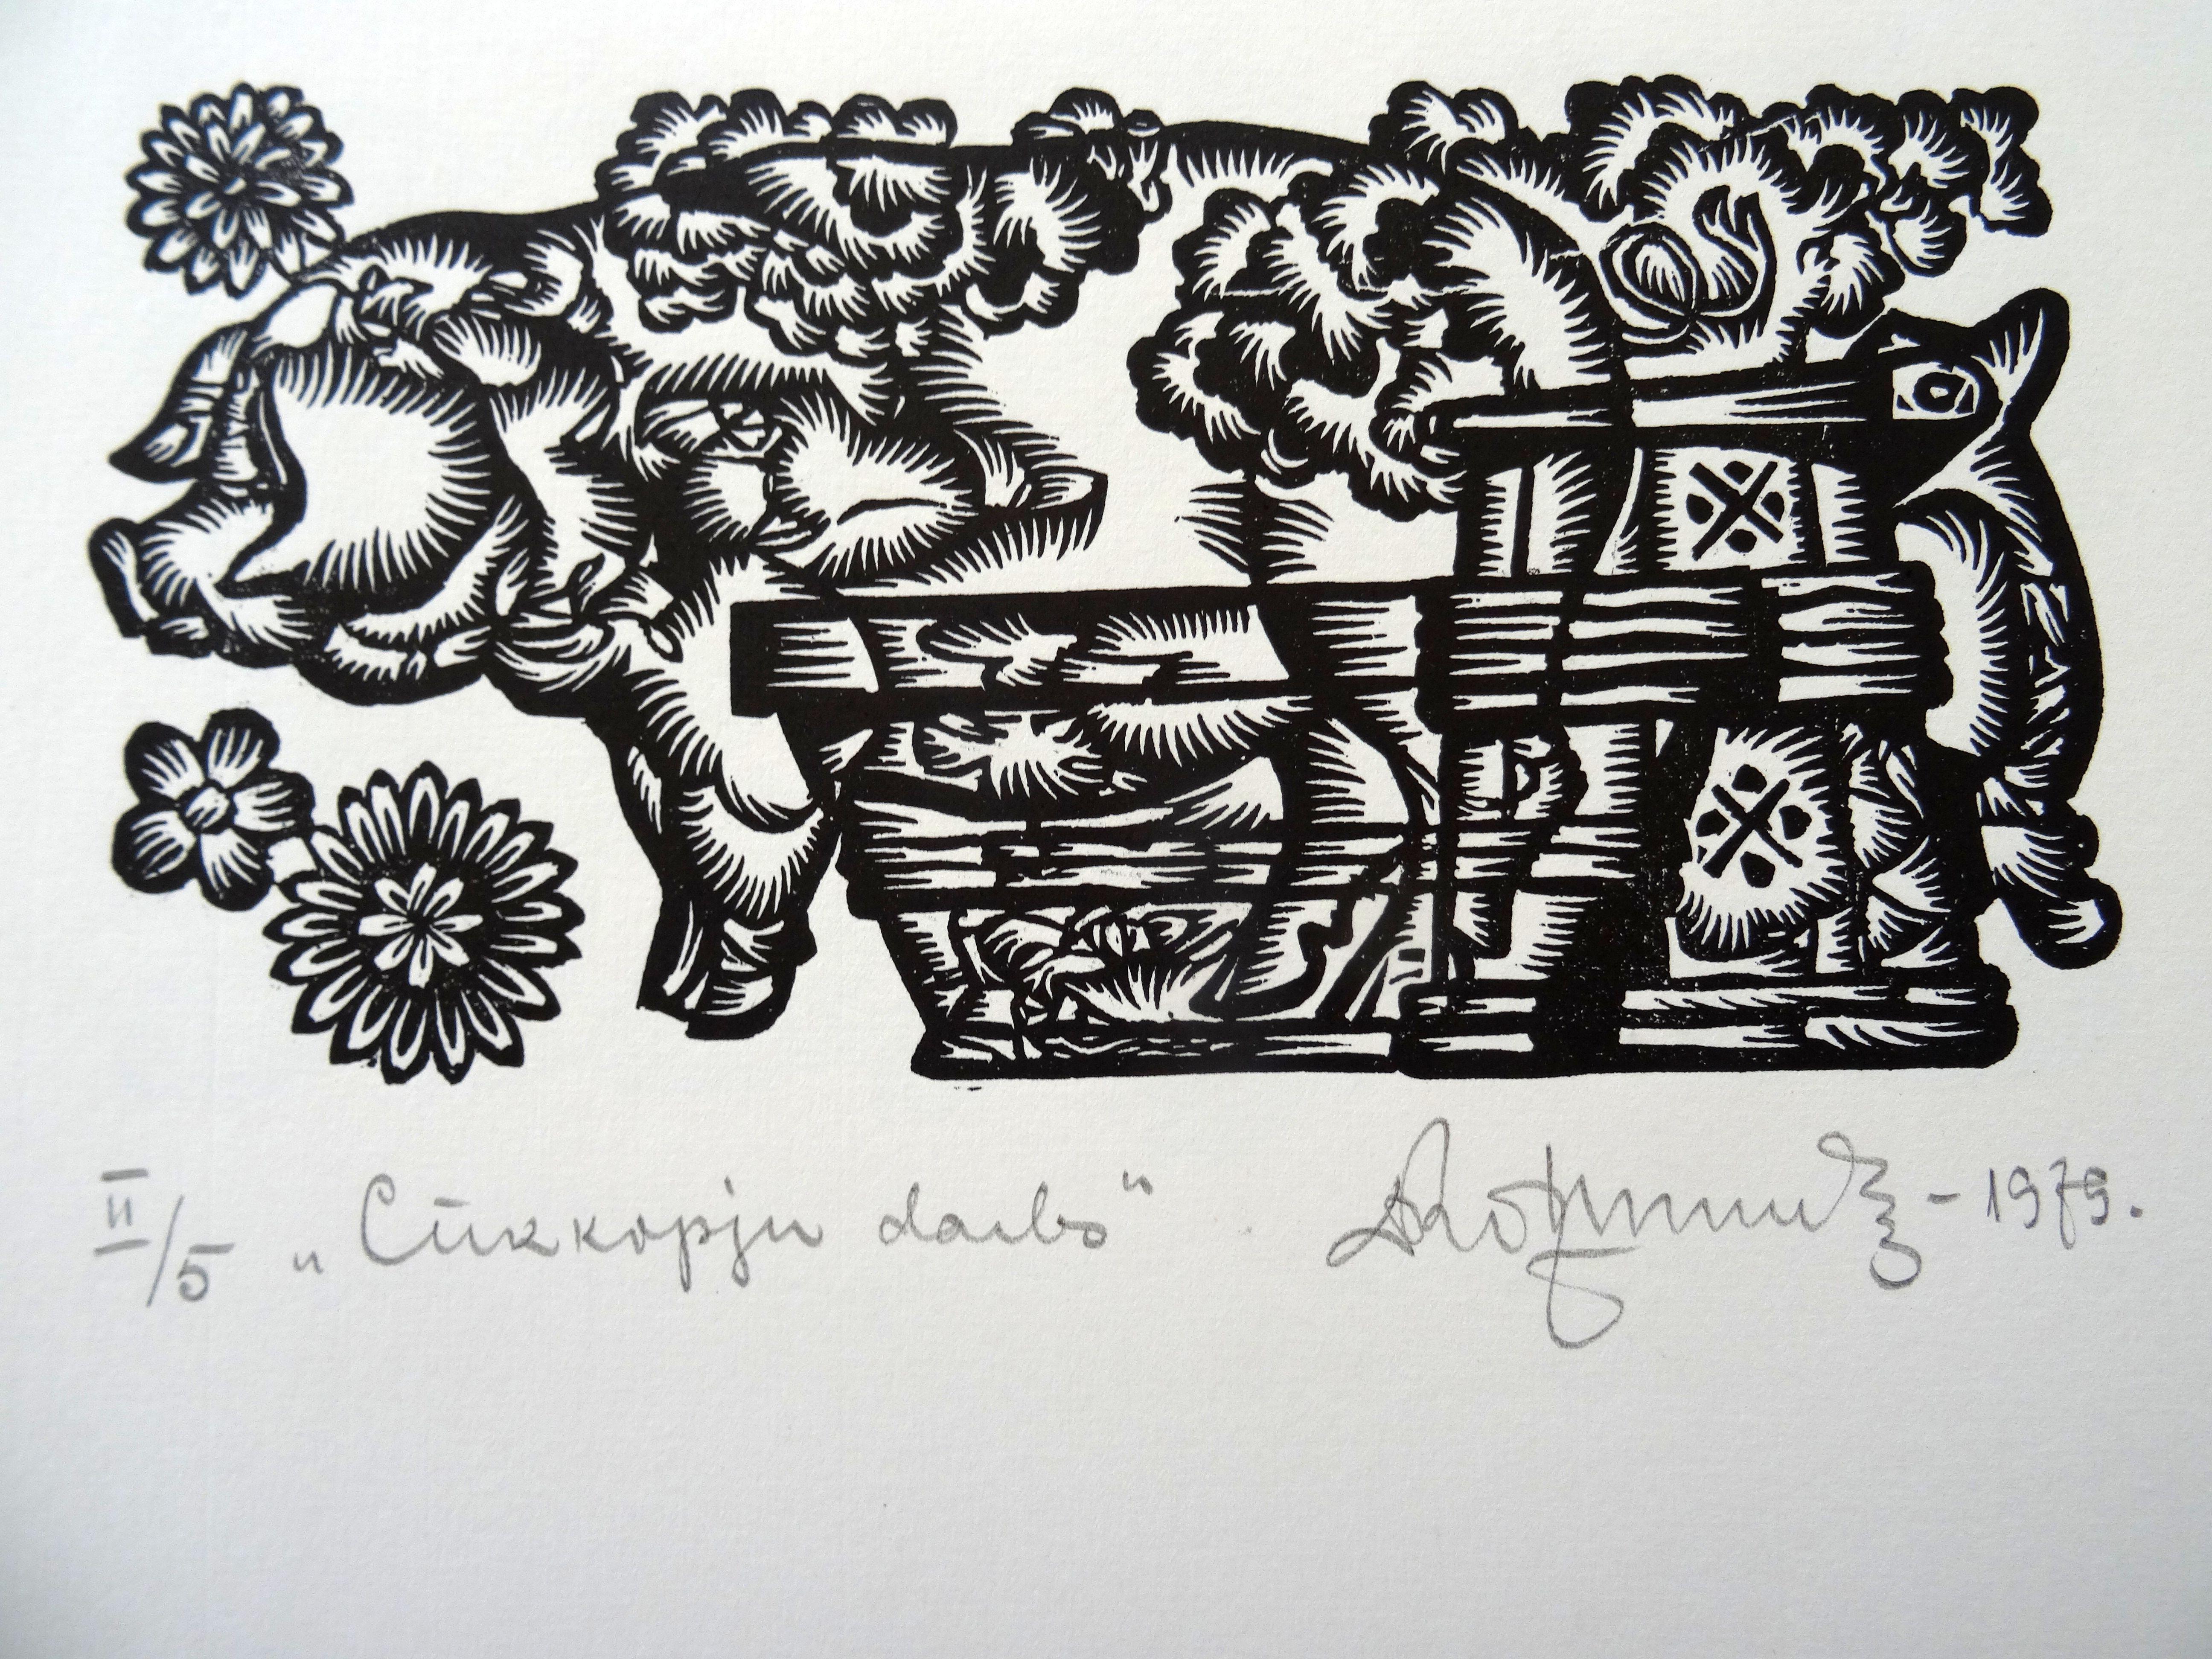 Dainis Rozkalns Animal Print – Beruf des Schweinezüchters. 1979. Papier, Linolschnitt, 25x34 cm